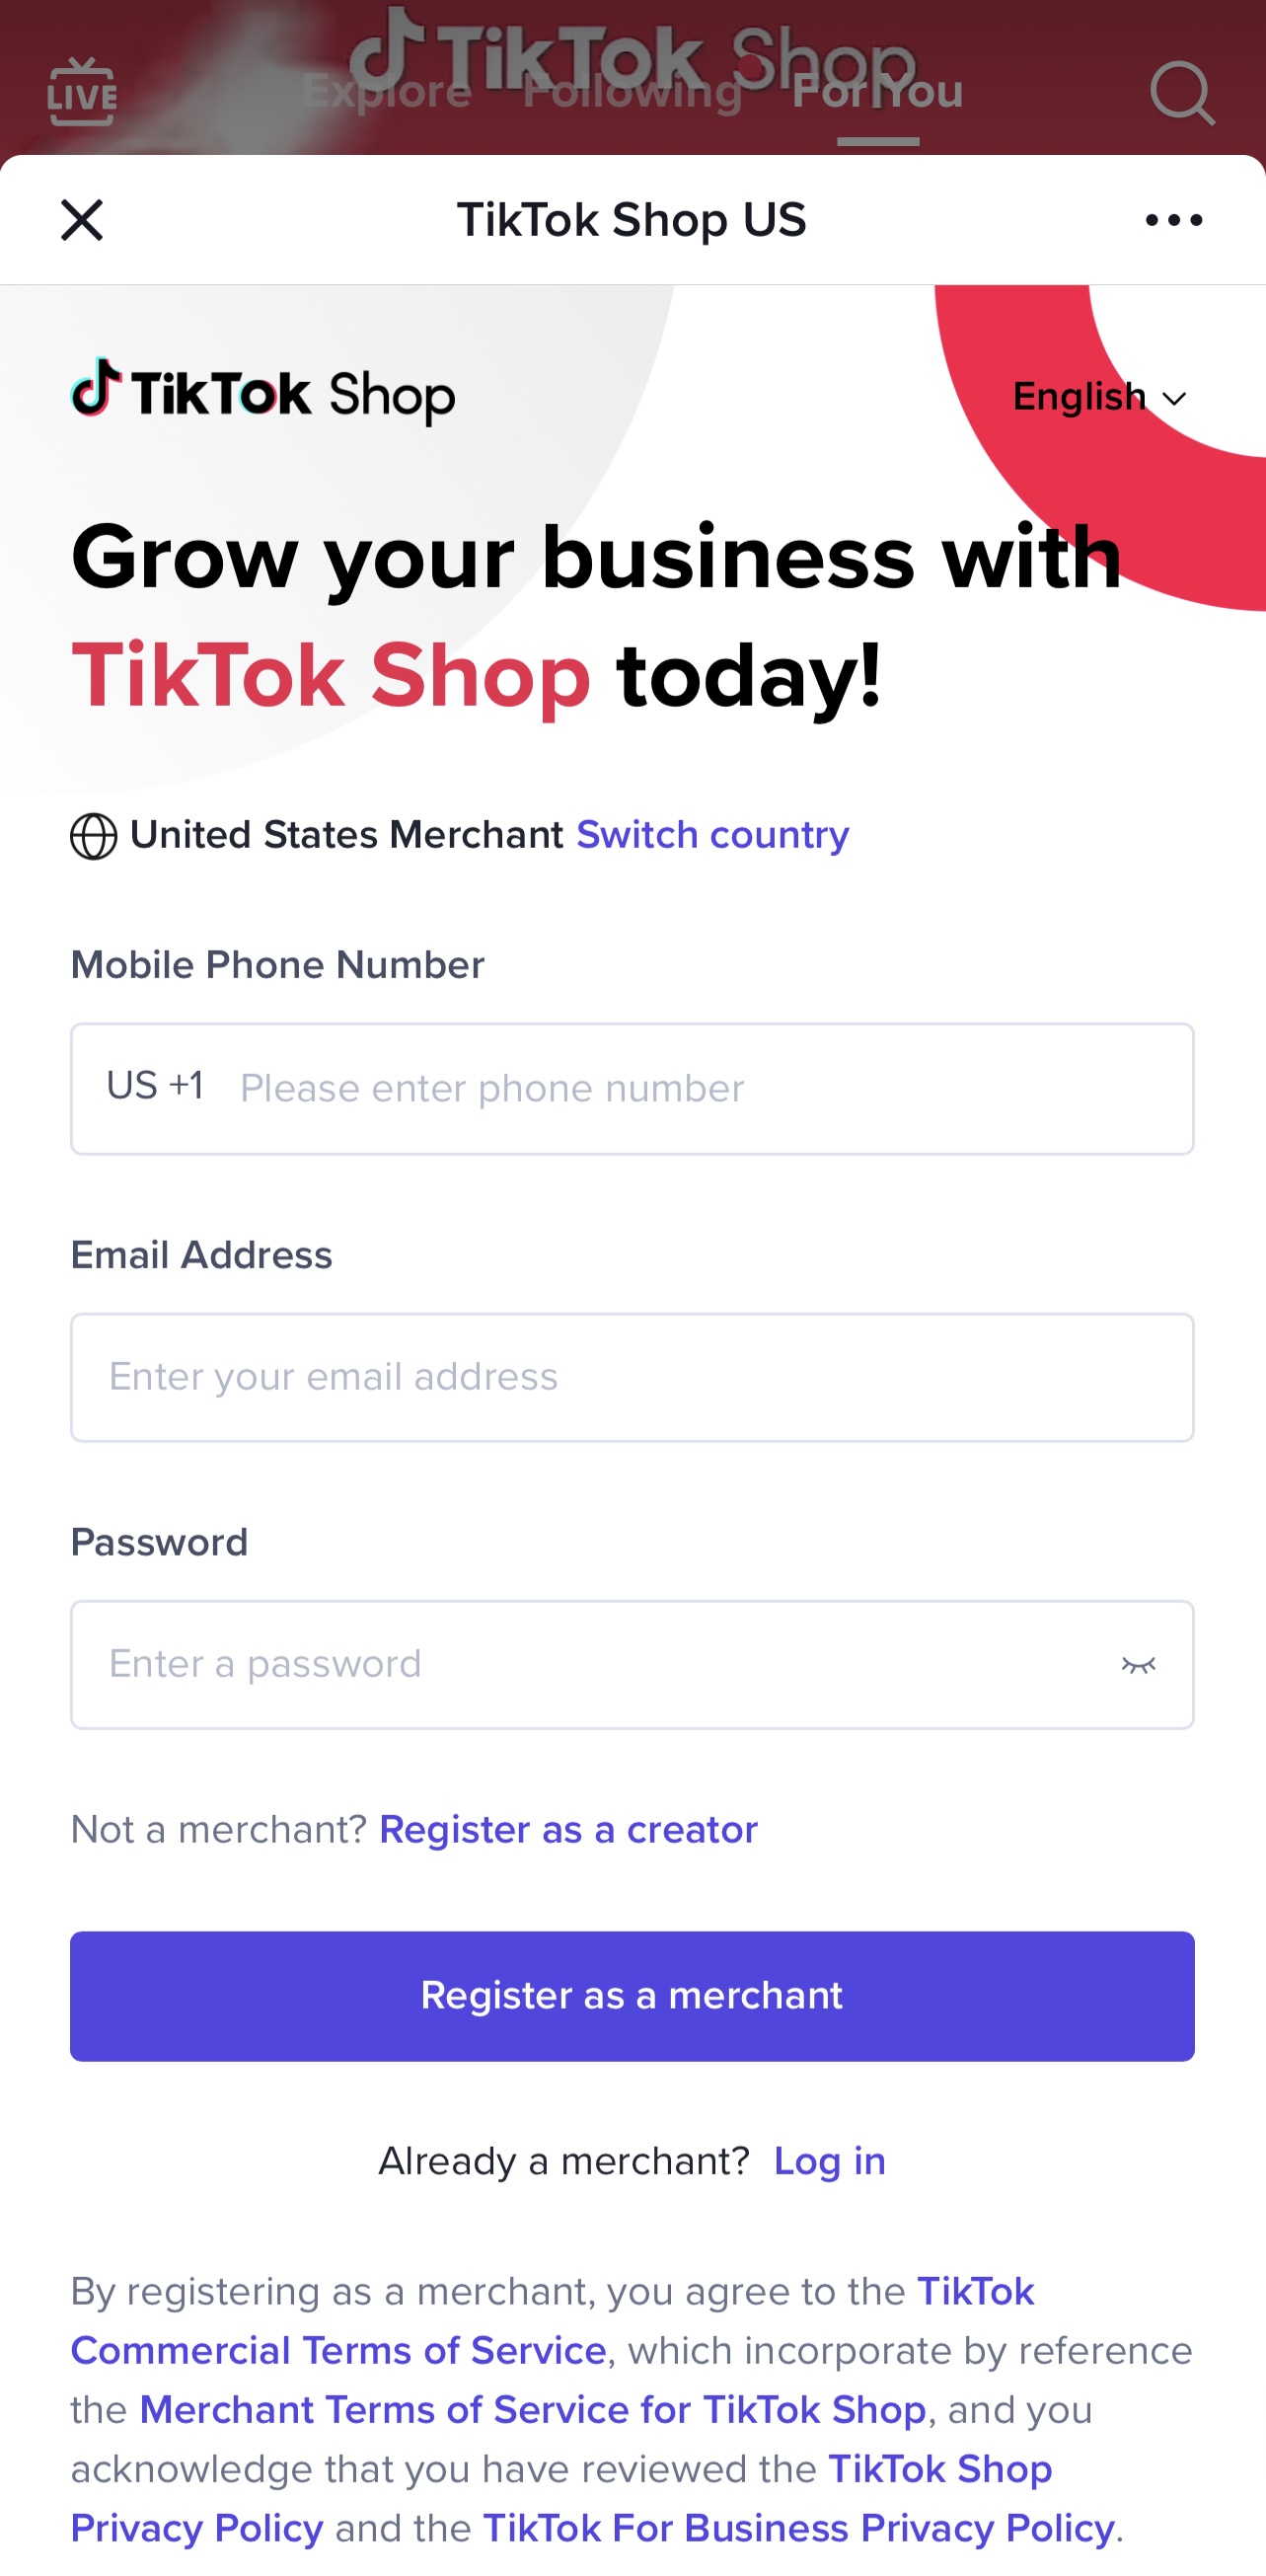 فروشگاه TikTok: تجارت اجتماعی برای برندها و تأثیرگذاران